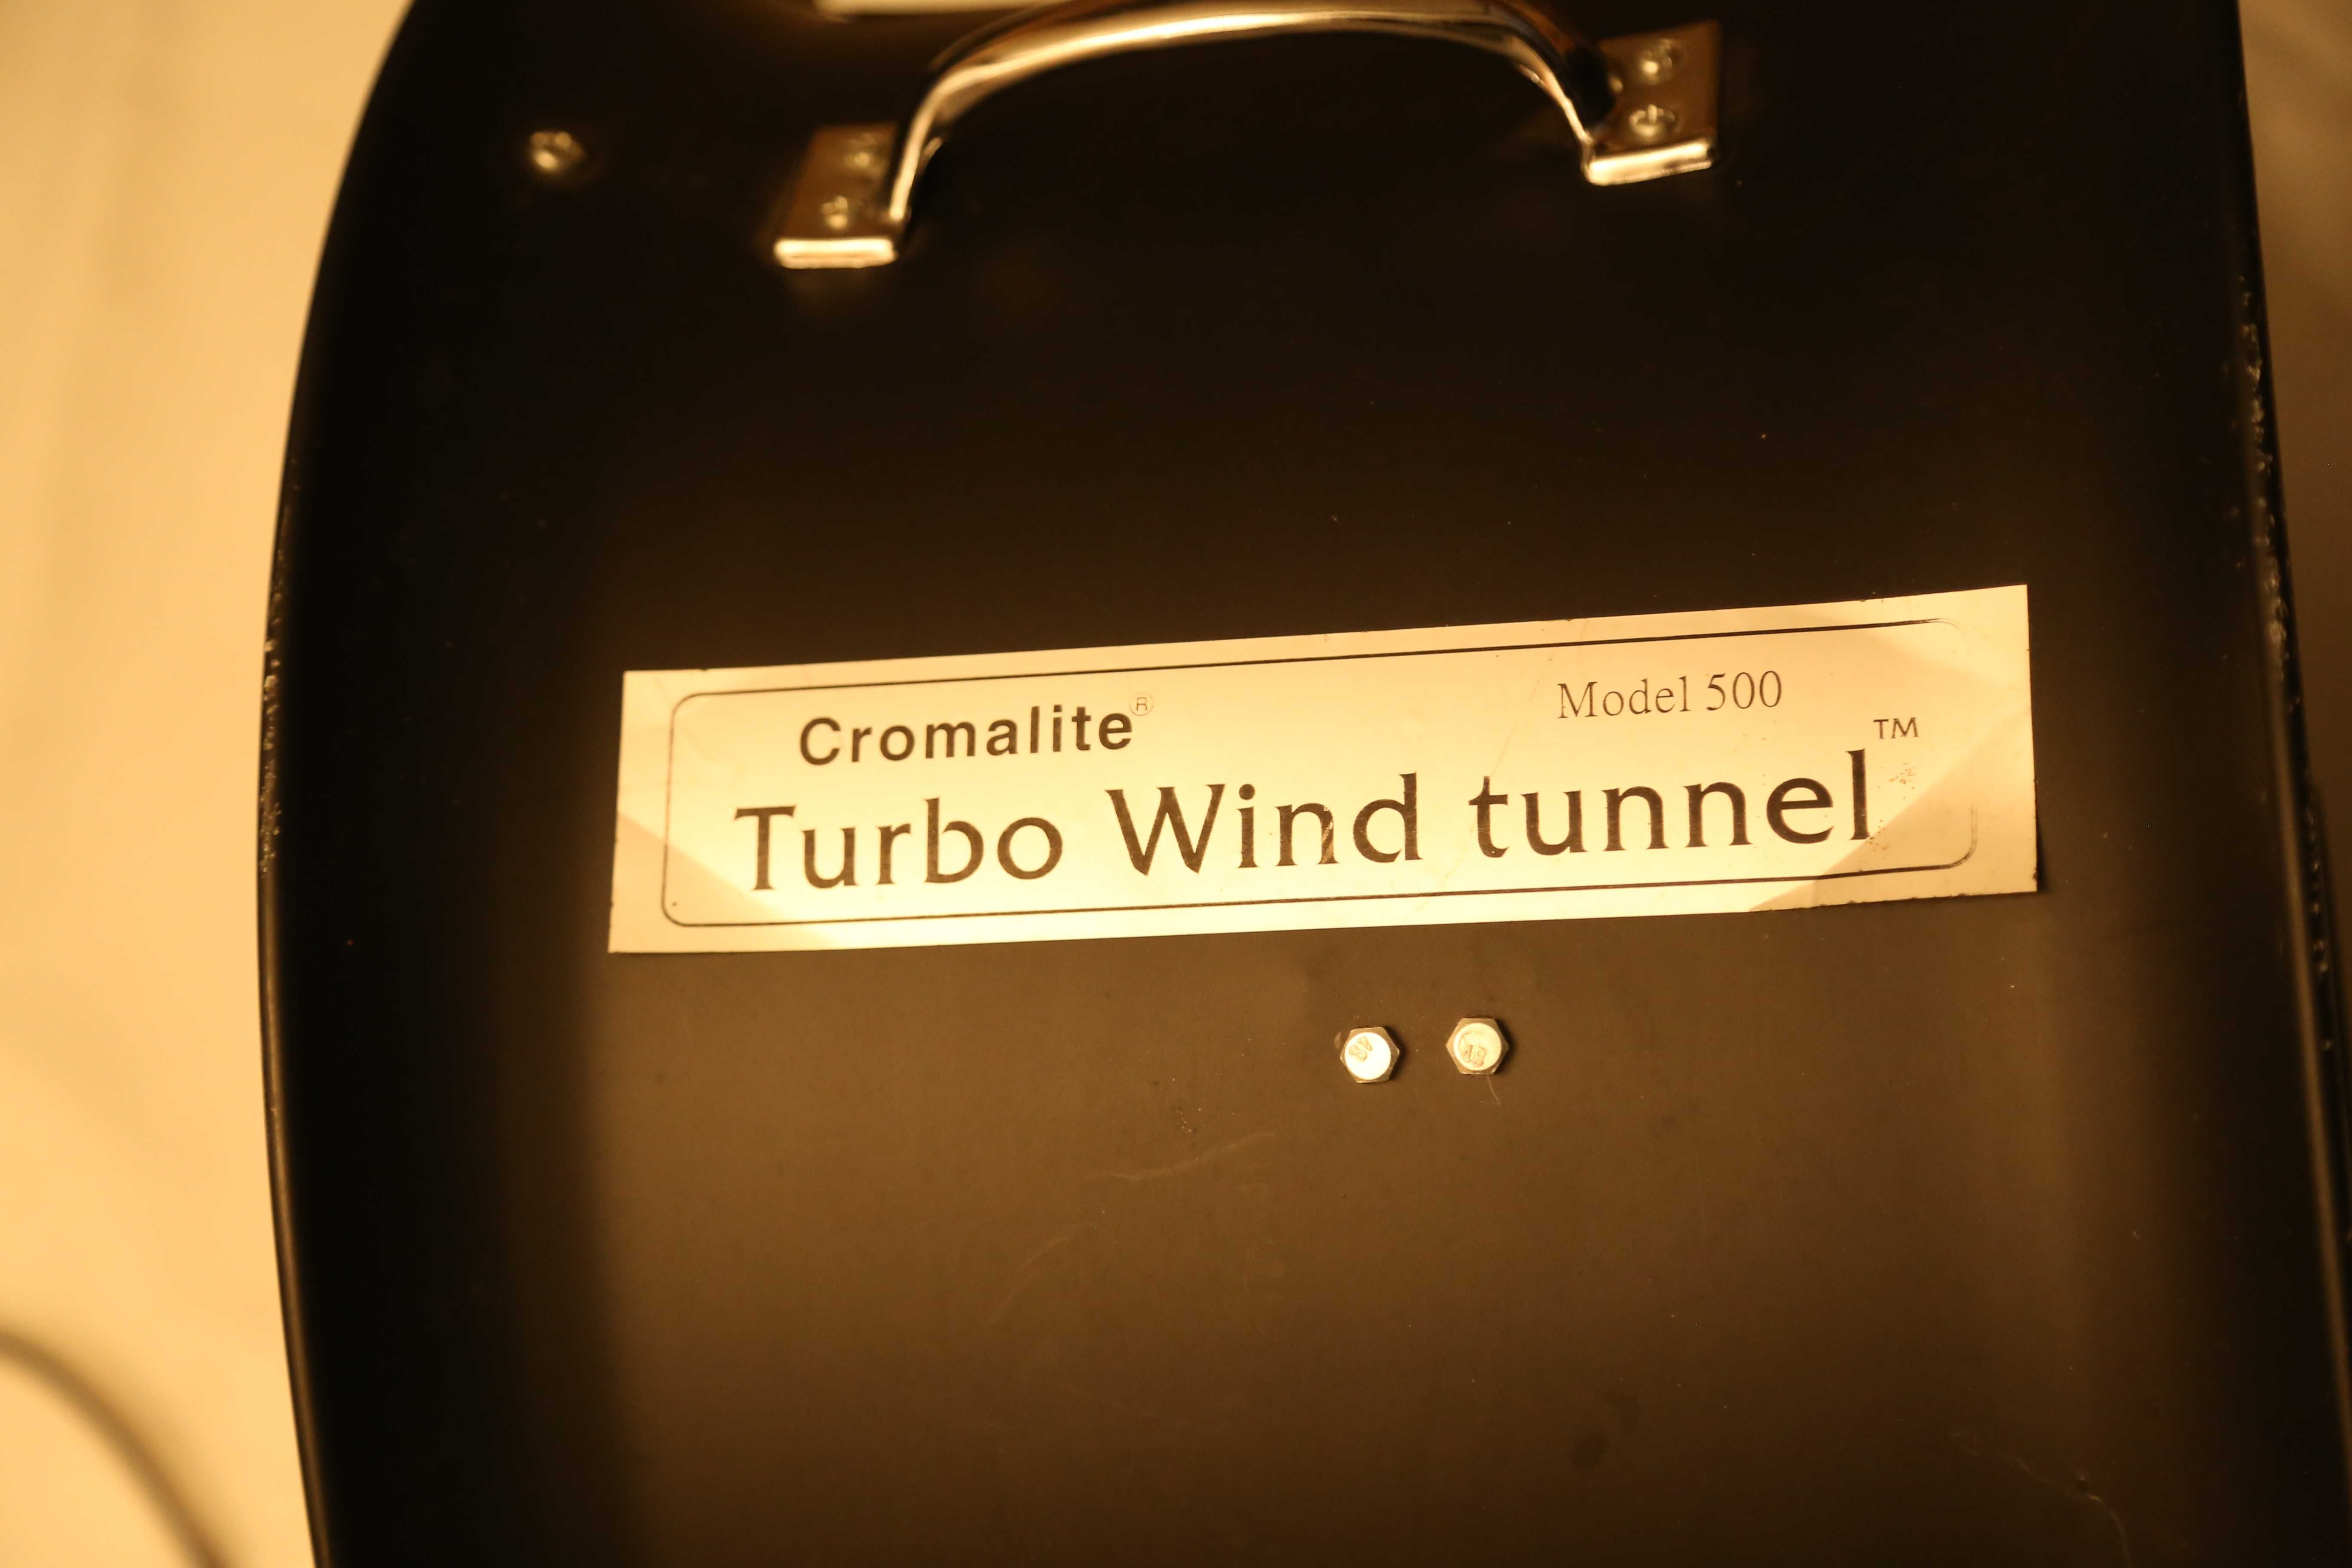 Ventoinha de estúdio cromalite Turbo Wind Tunnel 500